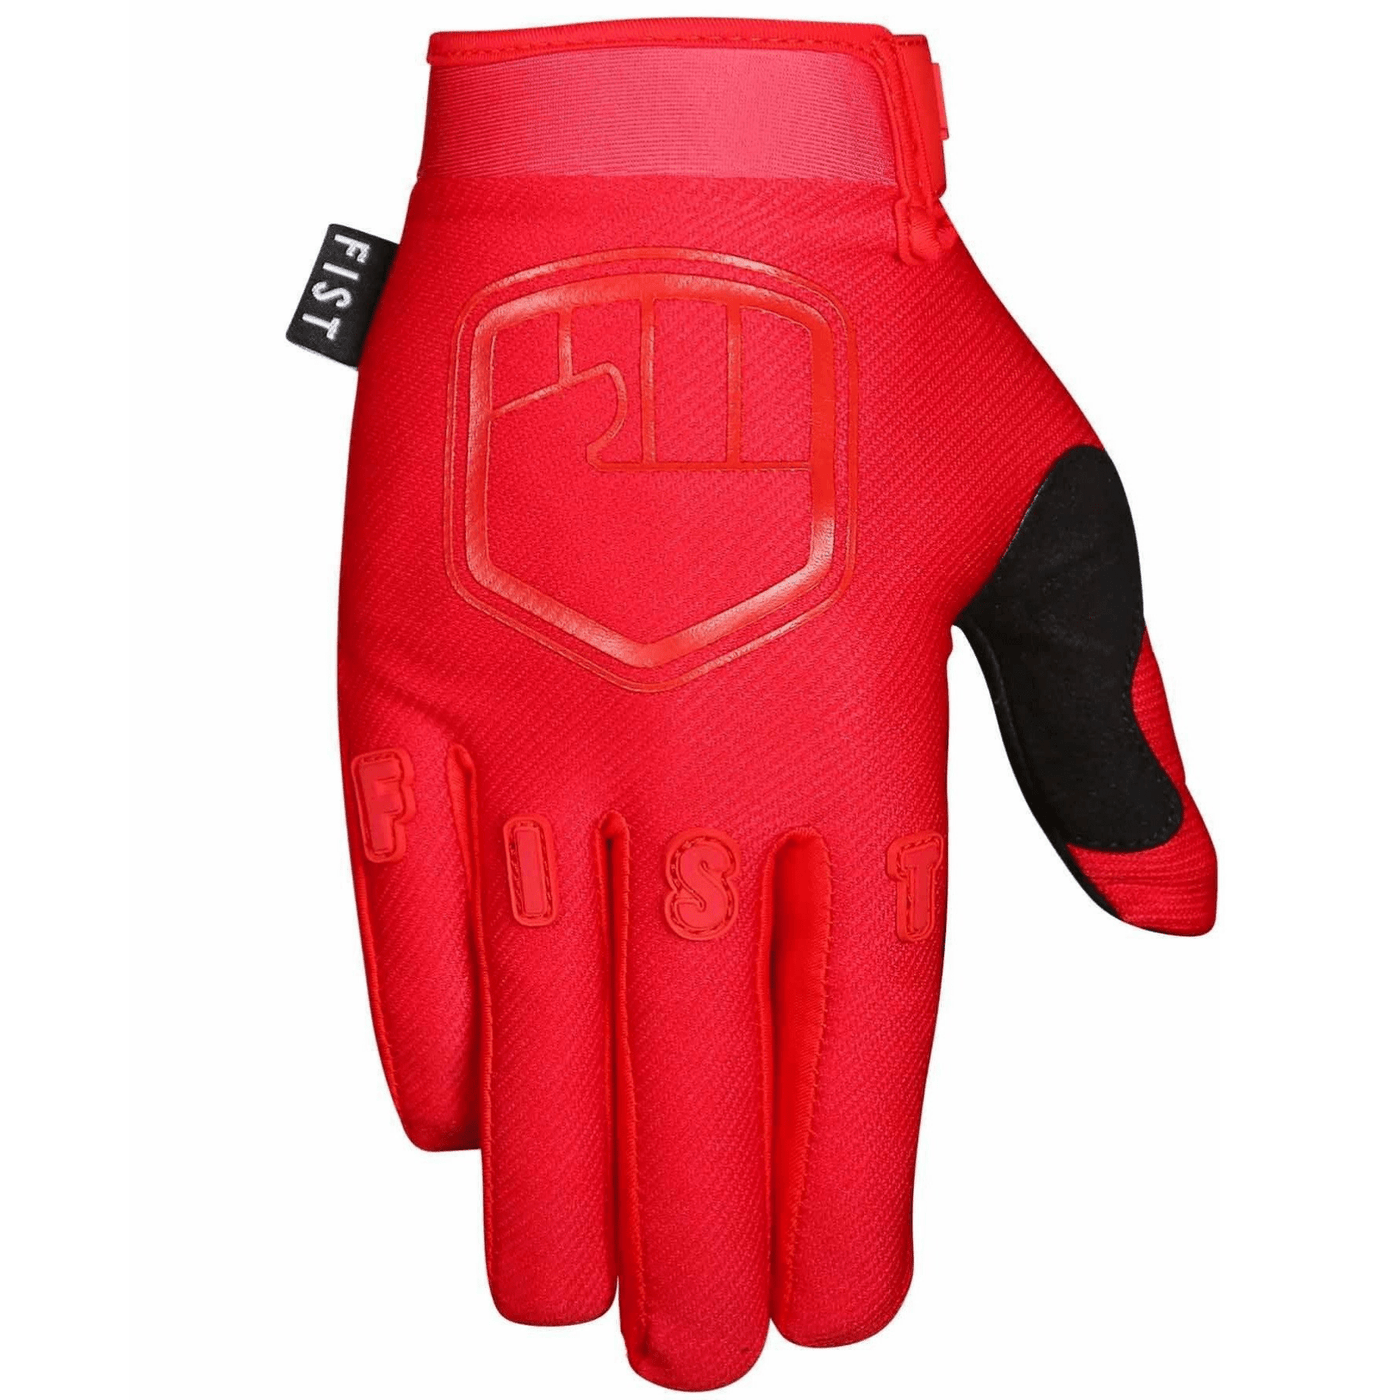 FIST Gloves Stocker - Red